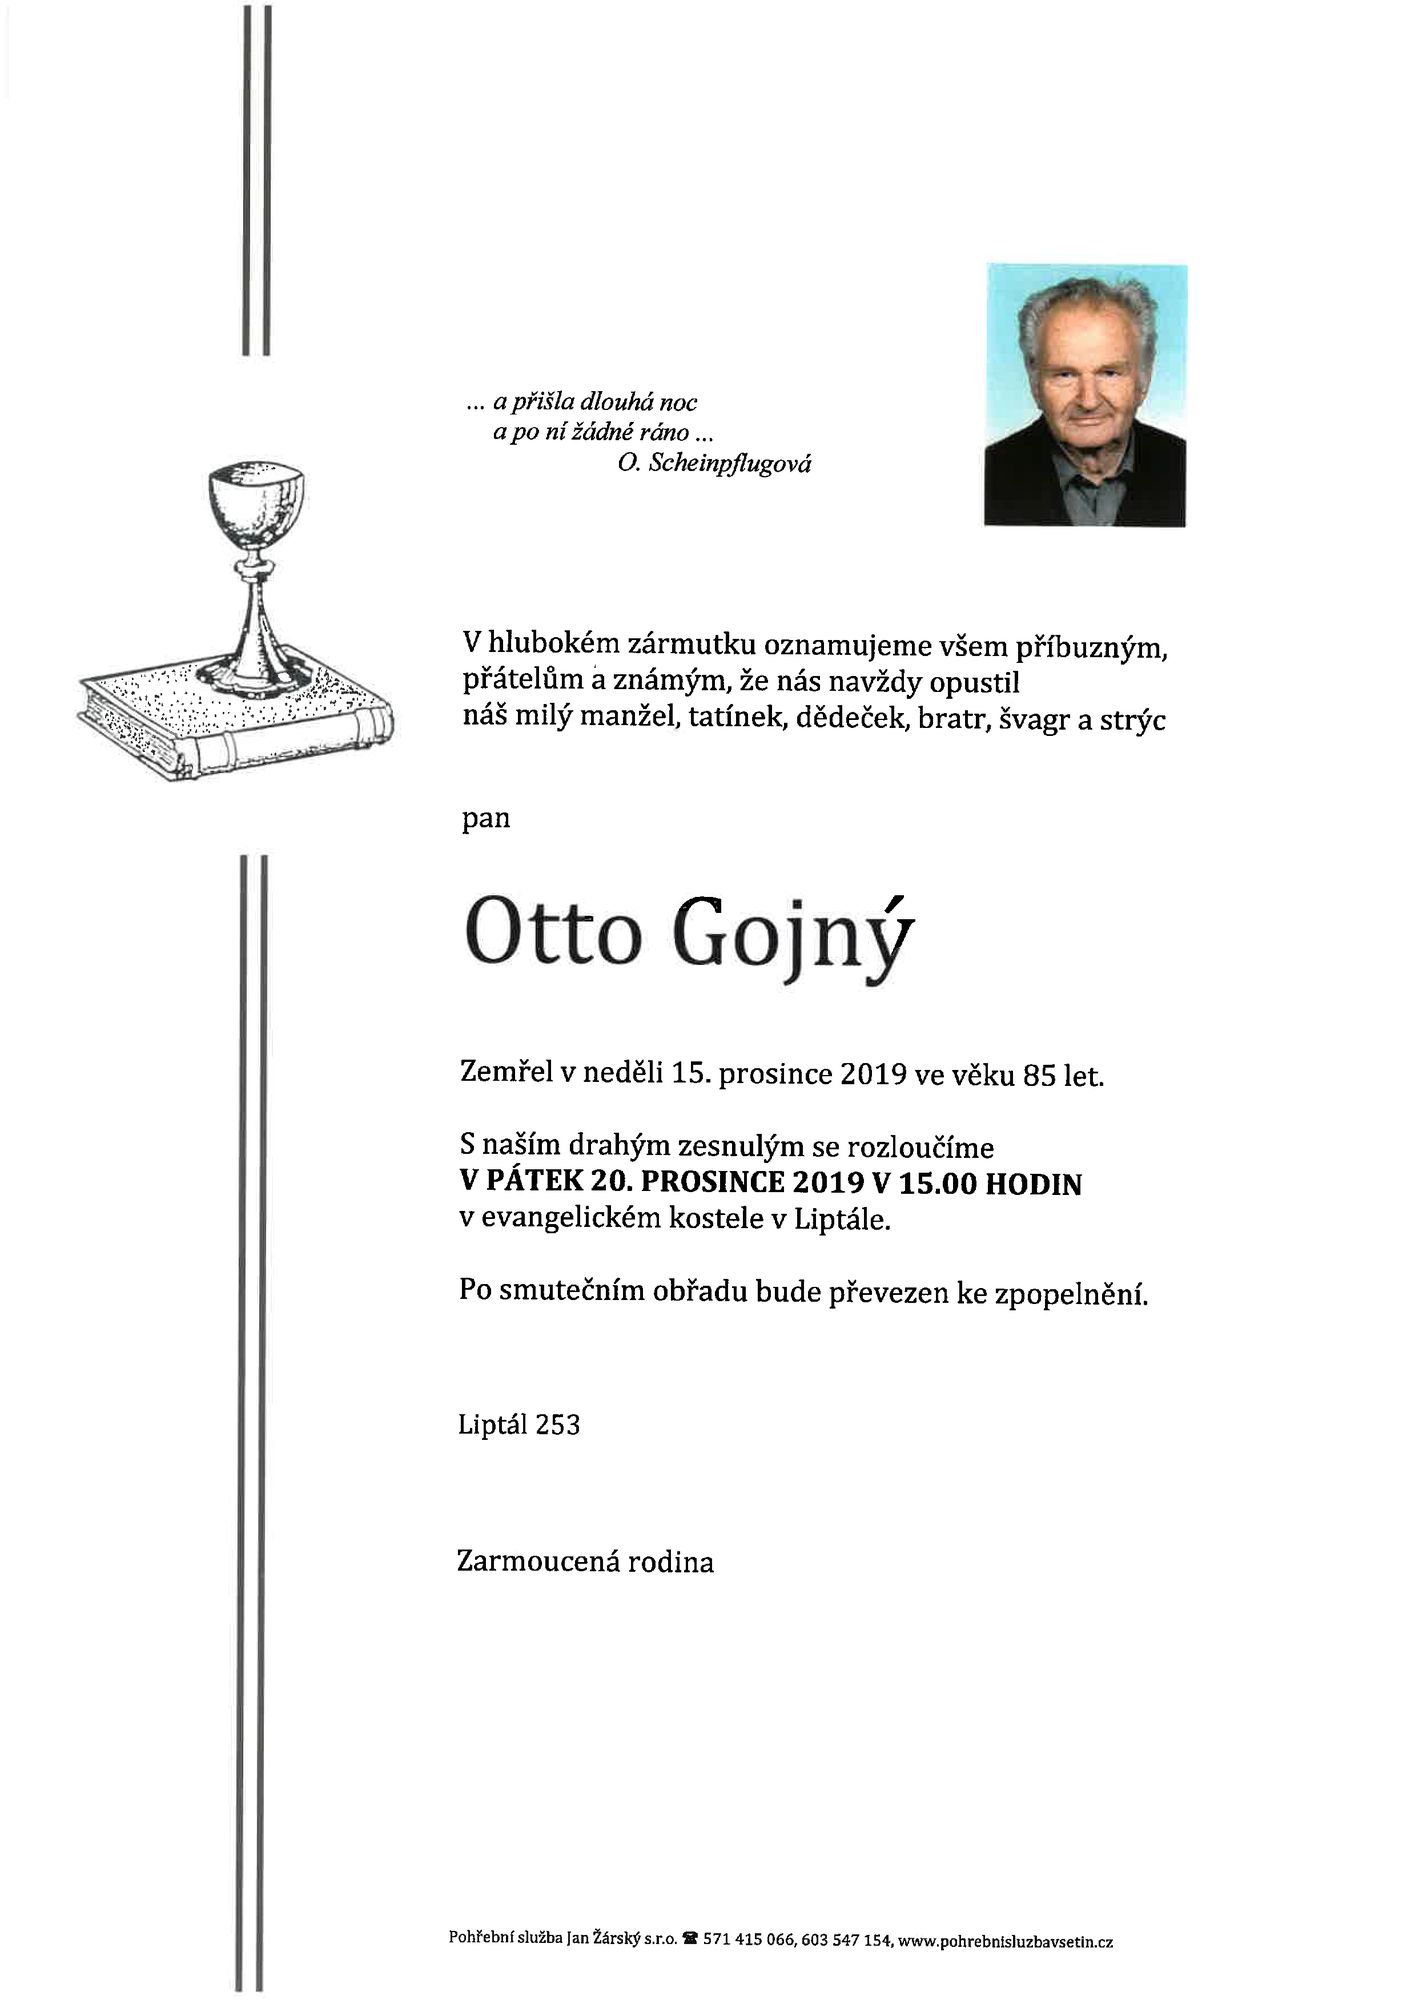 Otto Gojný